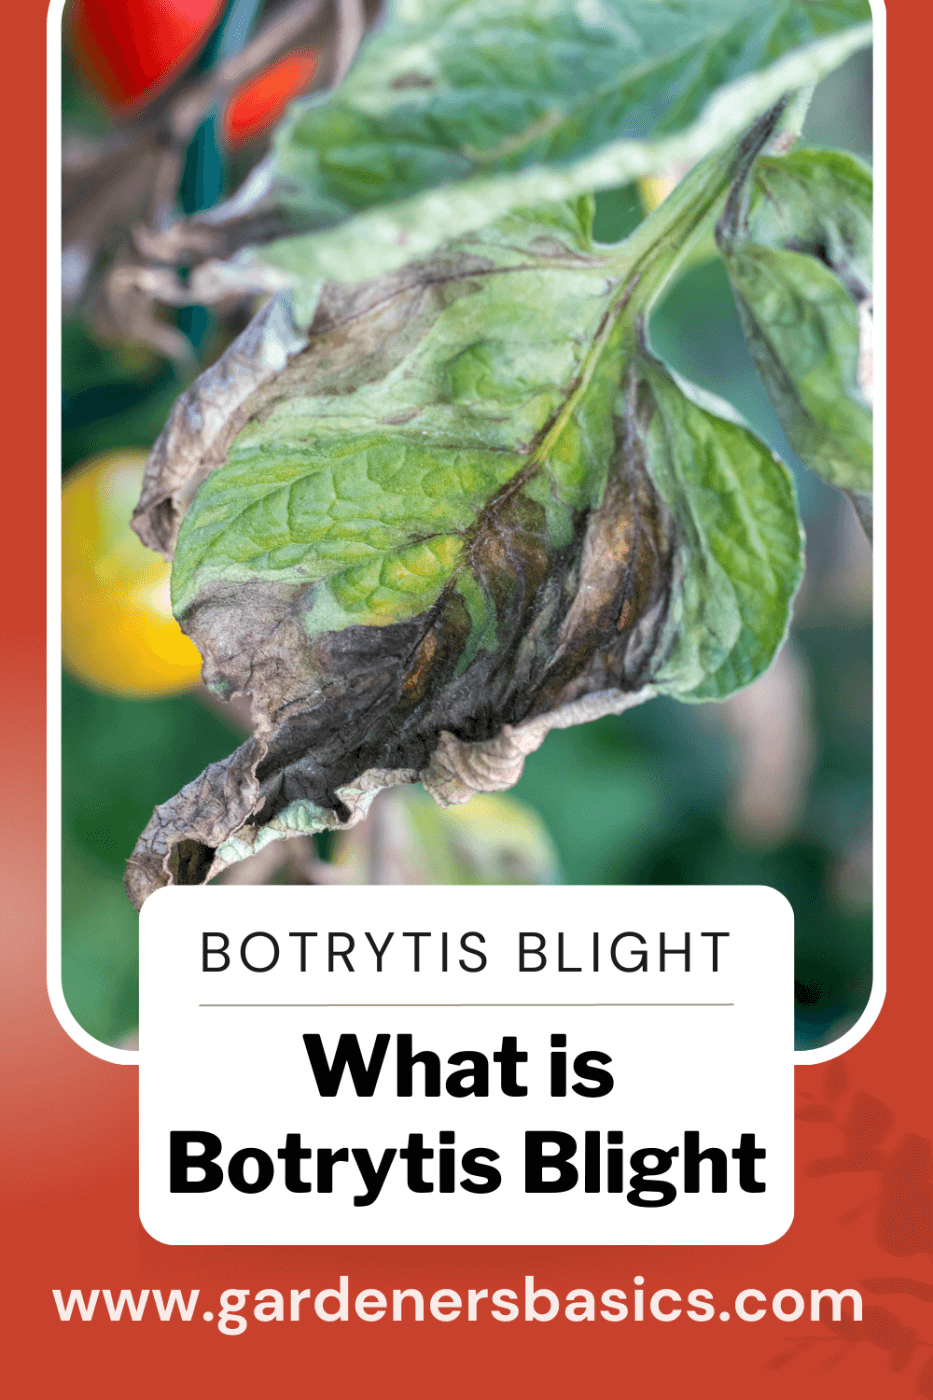 botrytis Blight